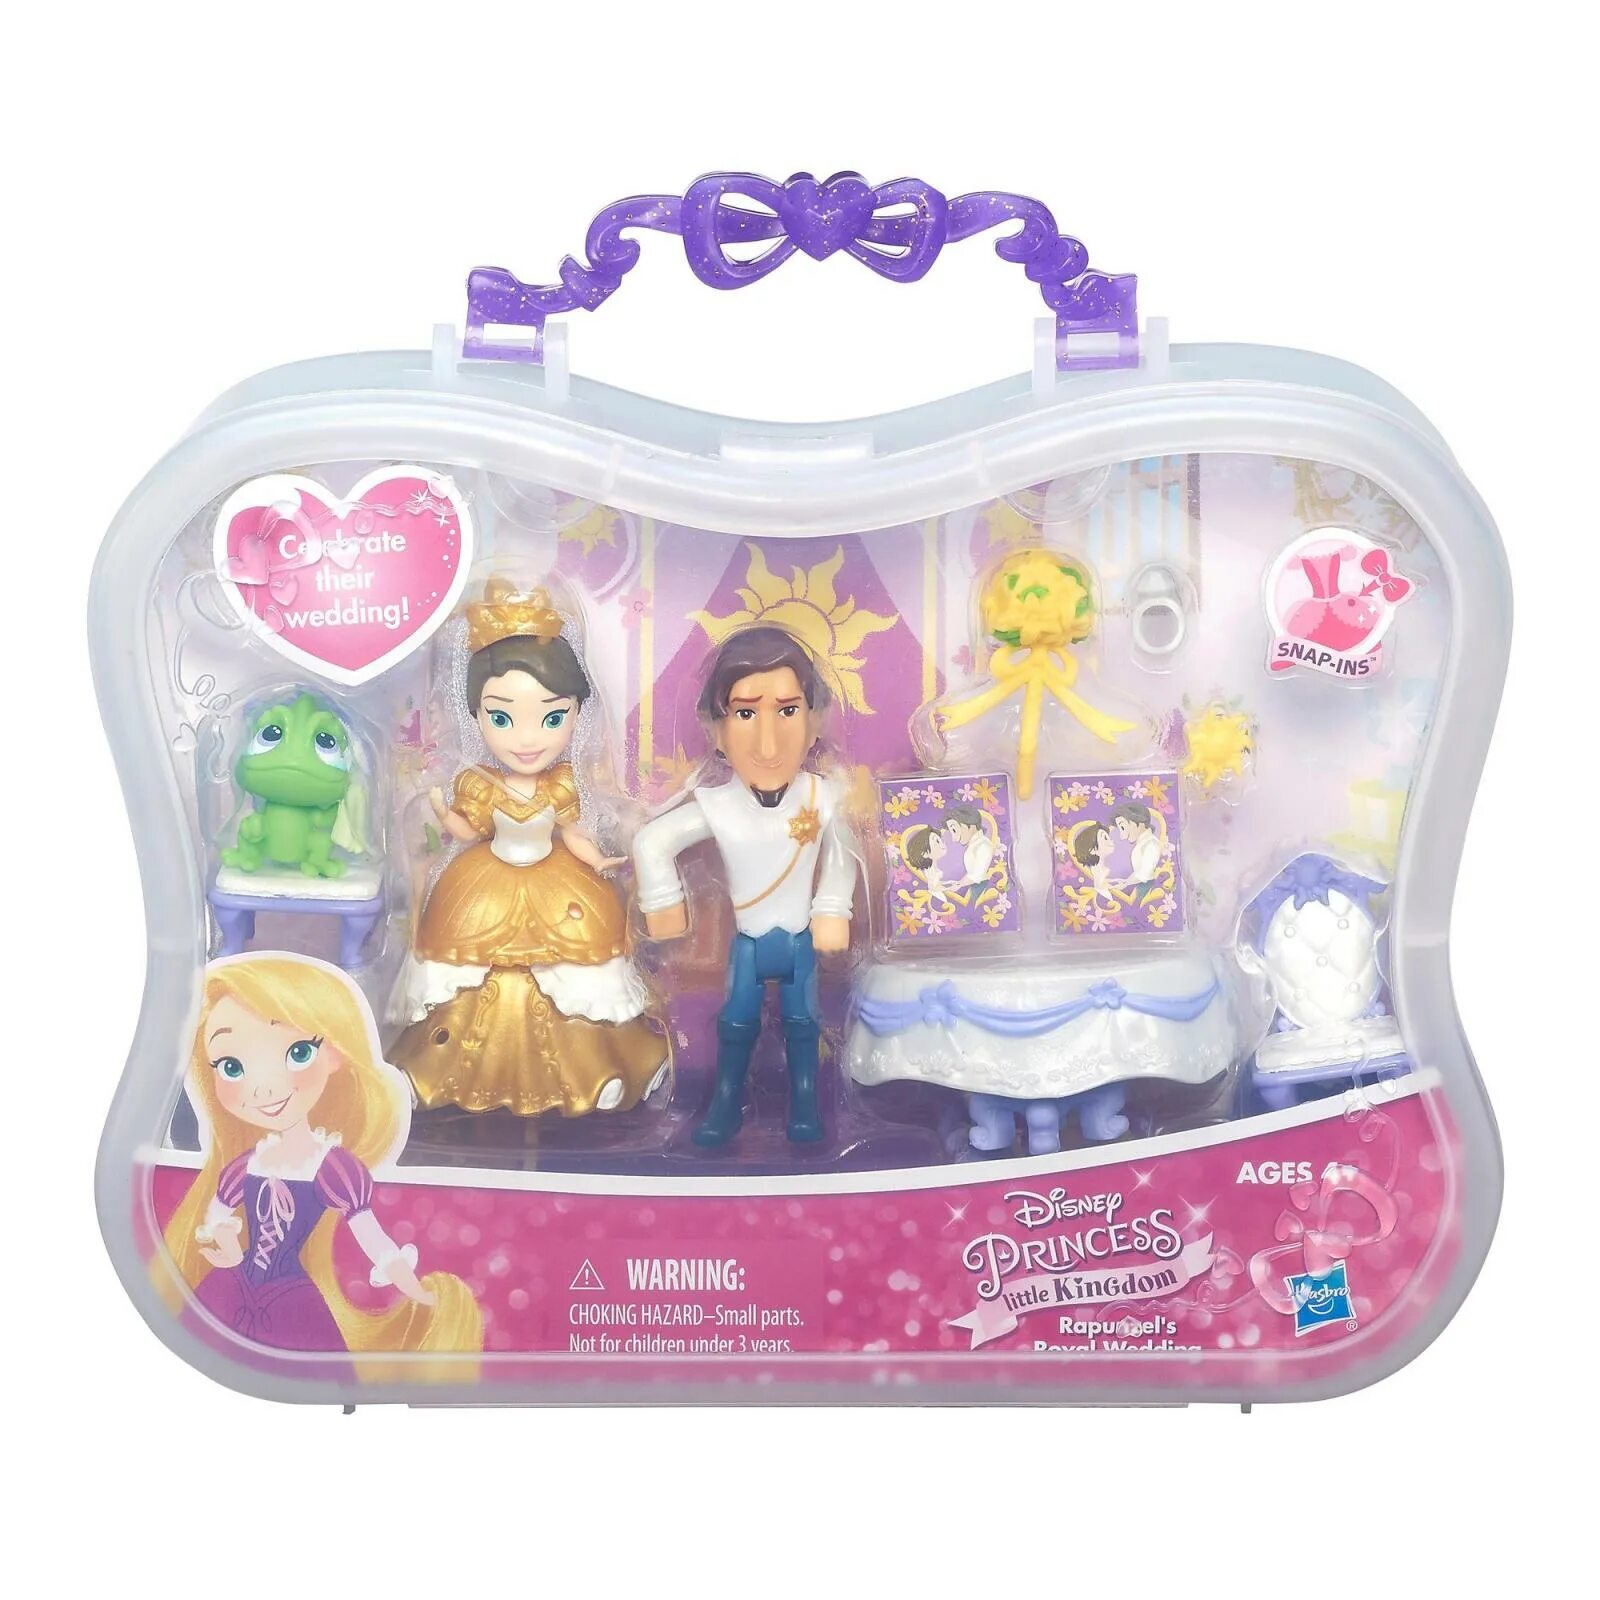 Набор принцесса. Набор Hasbro Disney Princess маленькое королевство, 8 см, b5341. Мини куклы Хасбро принцессы Дисней Рапунцель. Набор мини-кукол Hasbro Disney Princess Королевское сияние, b5347. Игровой набор Hasbro Disney Princess Рапунцель.